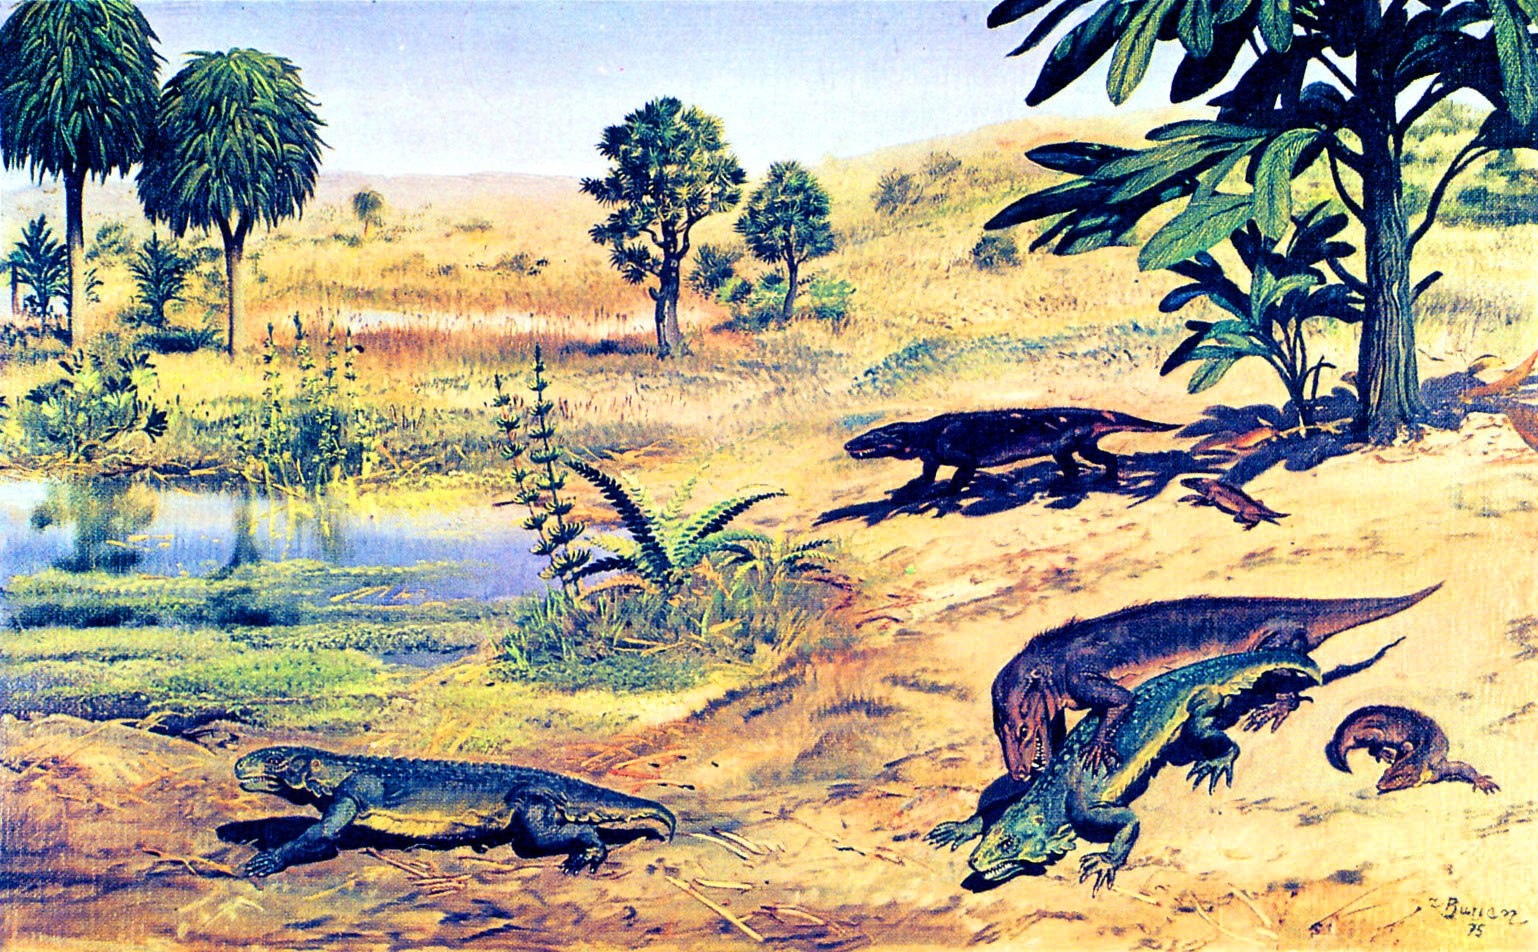 Мезозойская группа. Зденек Буриан динозавры. Зденек Буриан Триас. Динозавры Триасового периода. Триасовый период мезозойской эры.